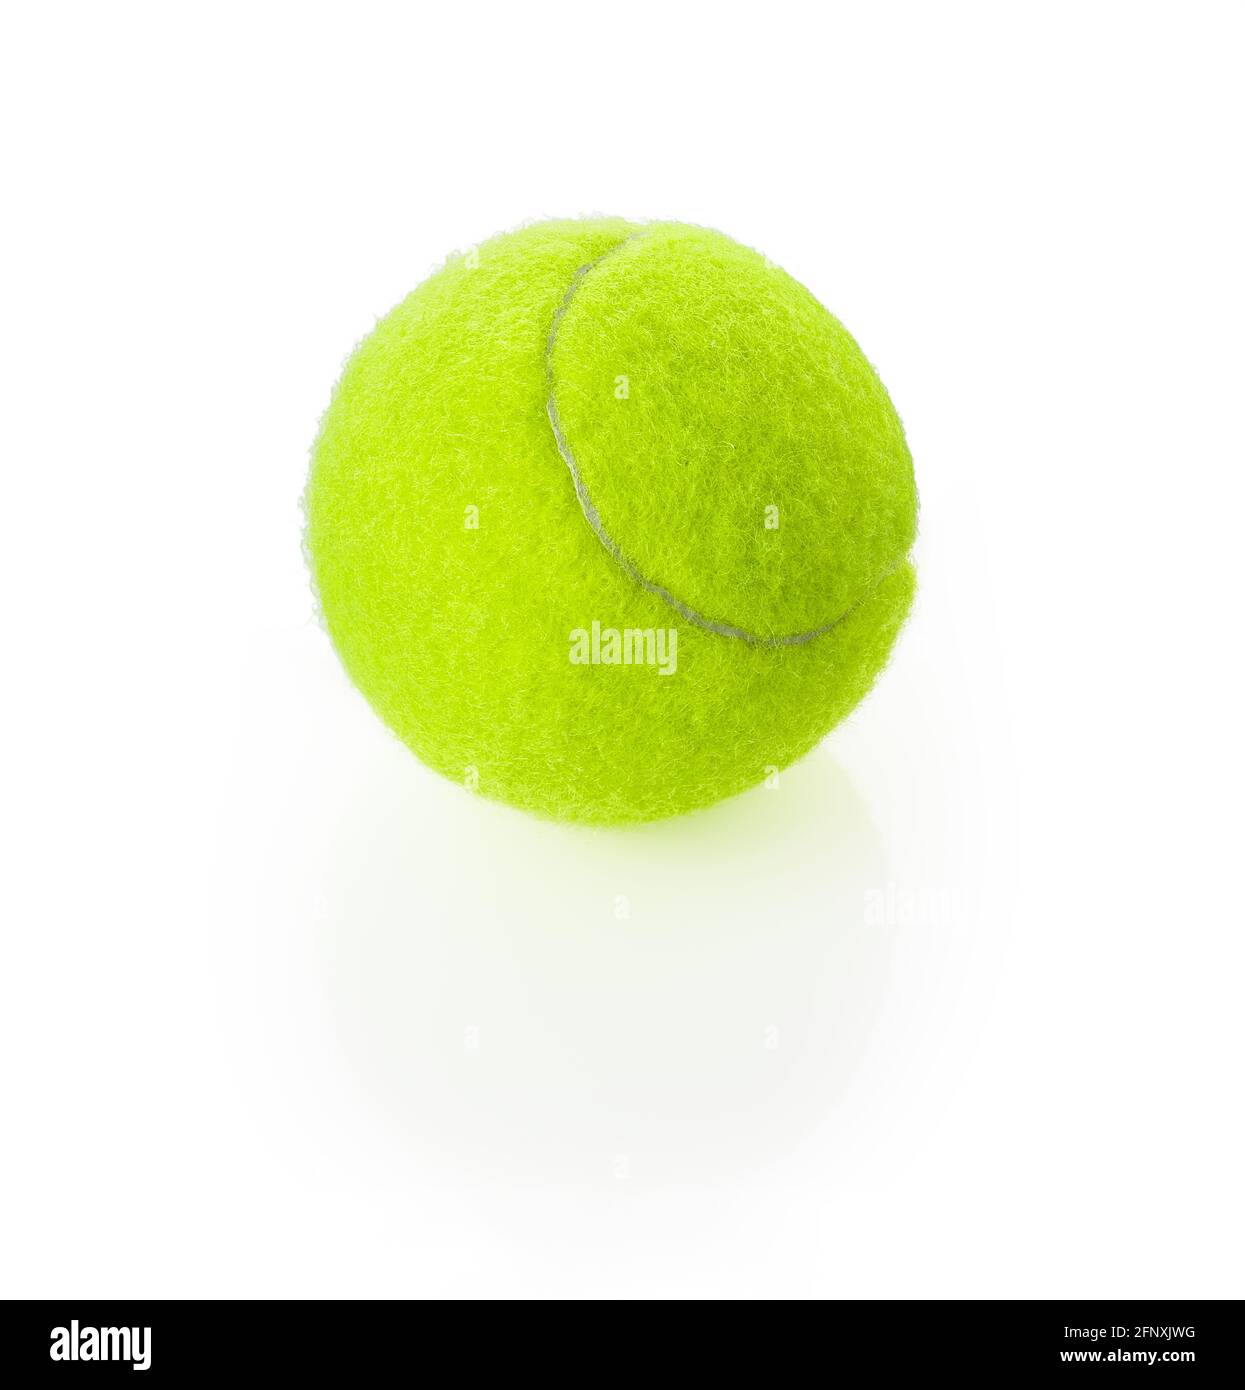 Nouvelle balle de tennis en feutre et caoutchouc isolée sur fond blanc. Équipement de sport de couleur jaune vert néon brillant. Elément de conception avec ombre. Banque D'Images